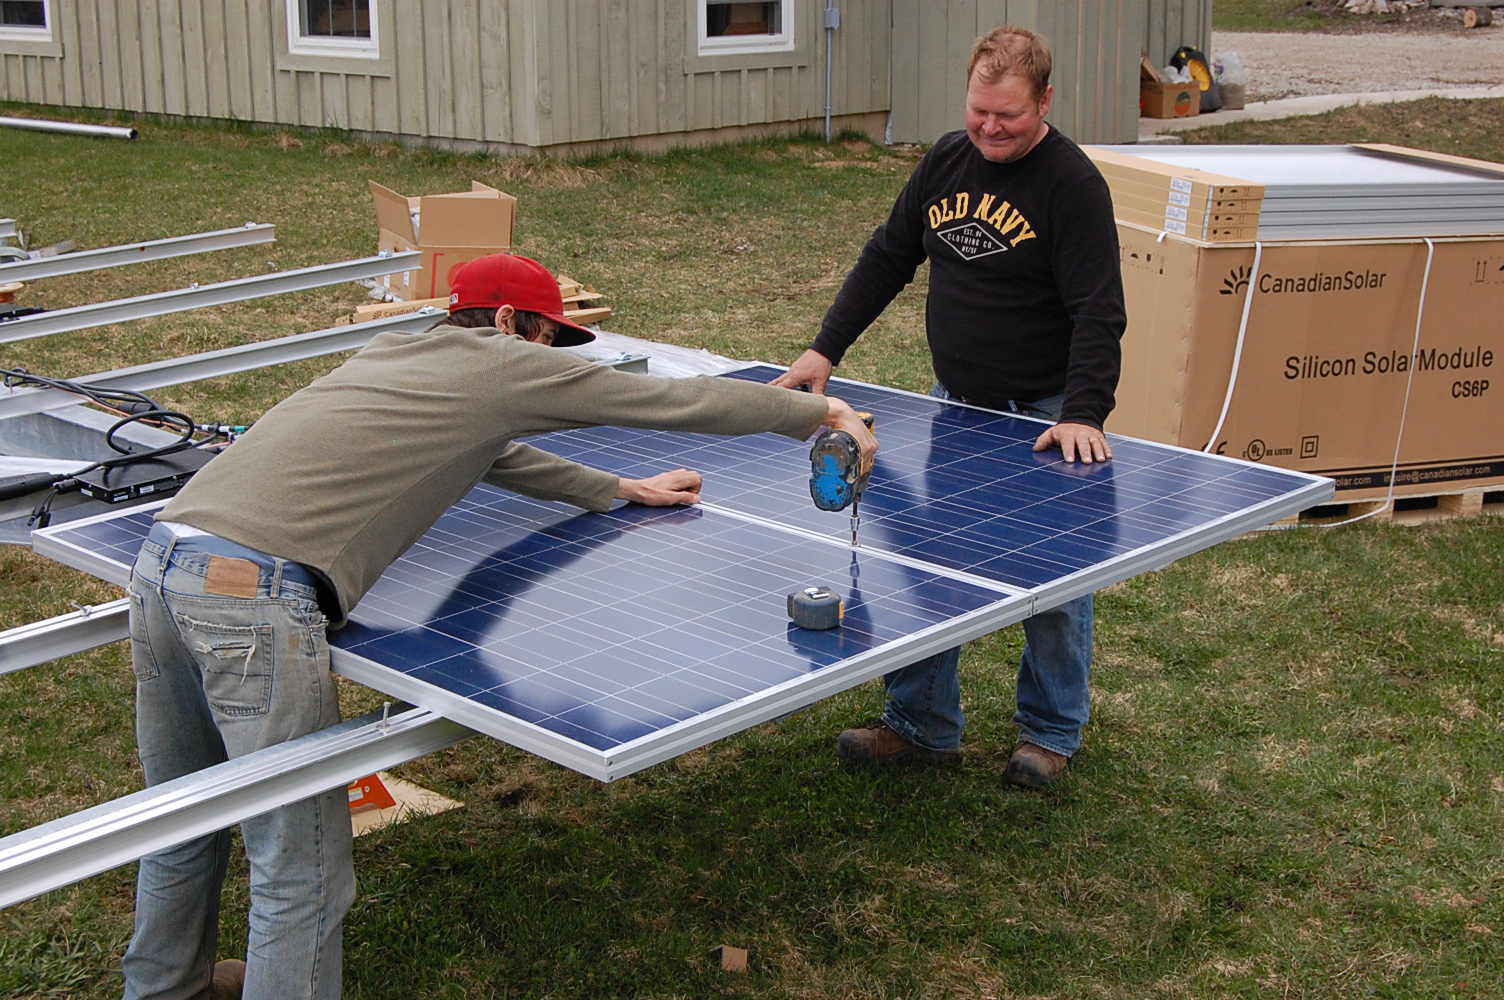 Солнечные батареи своими руками: инструкция по изготовлению